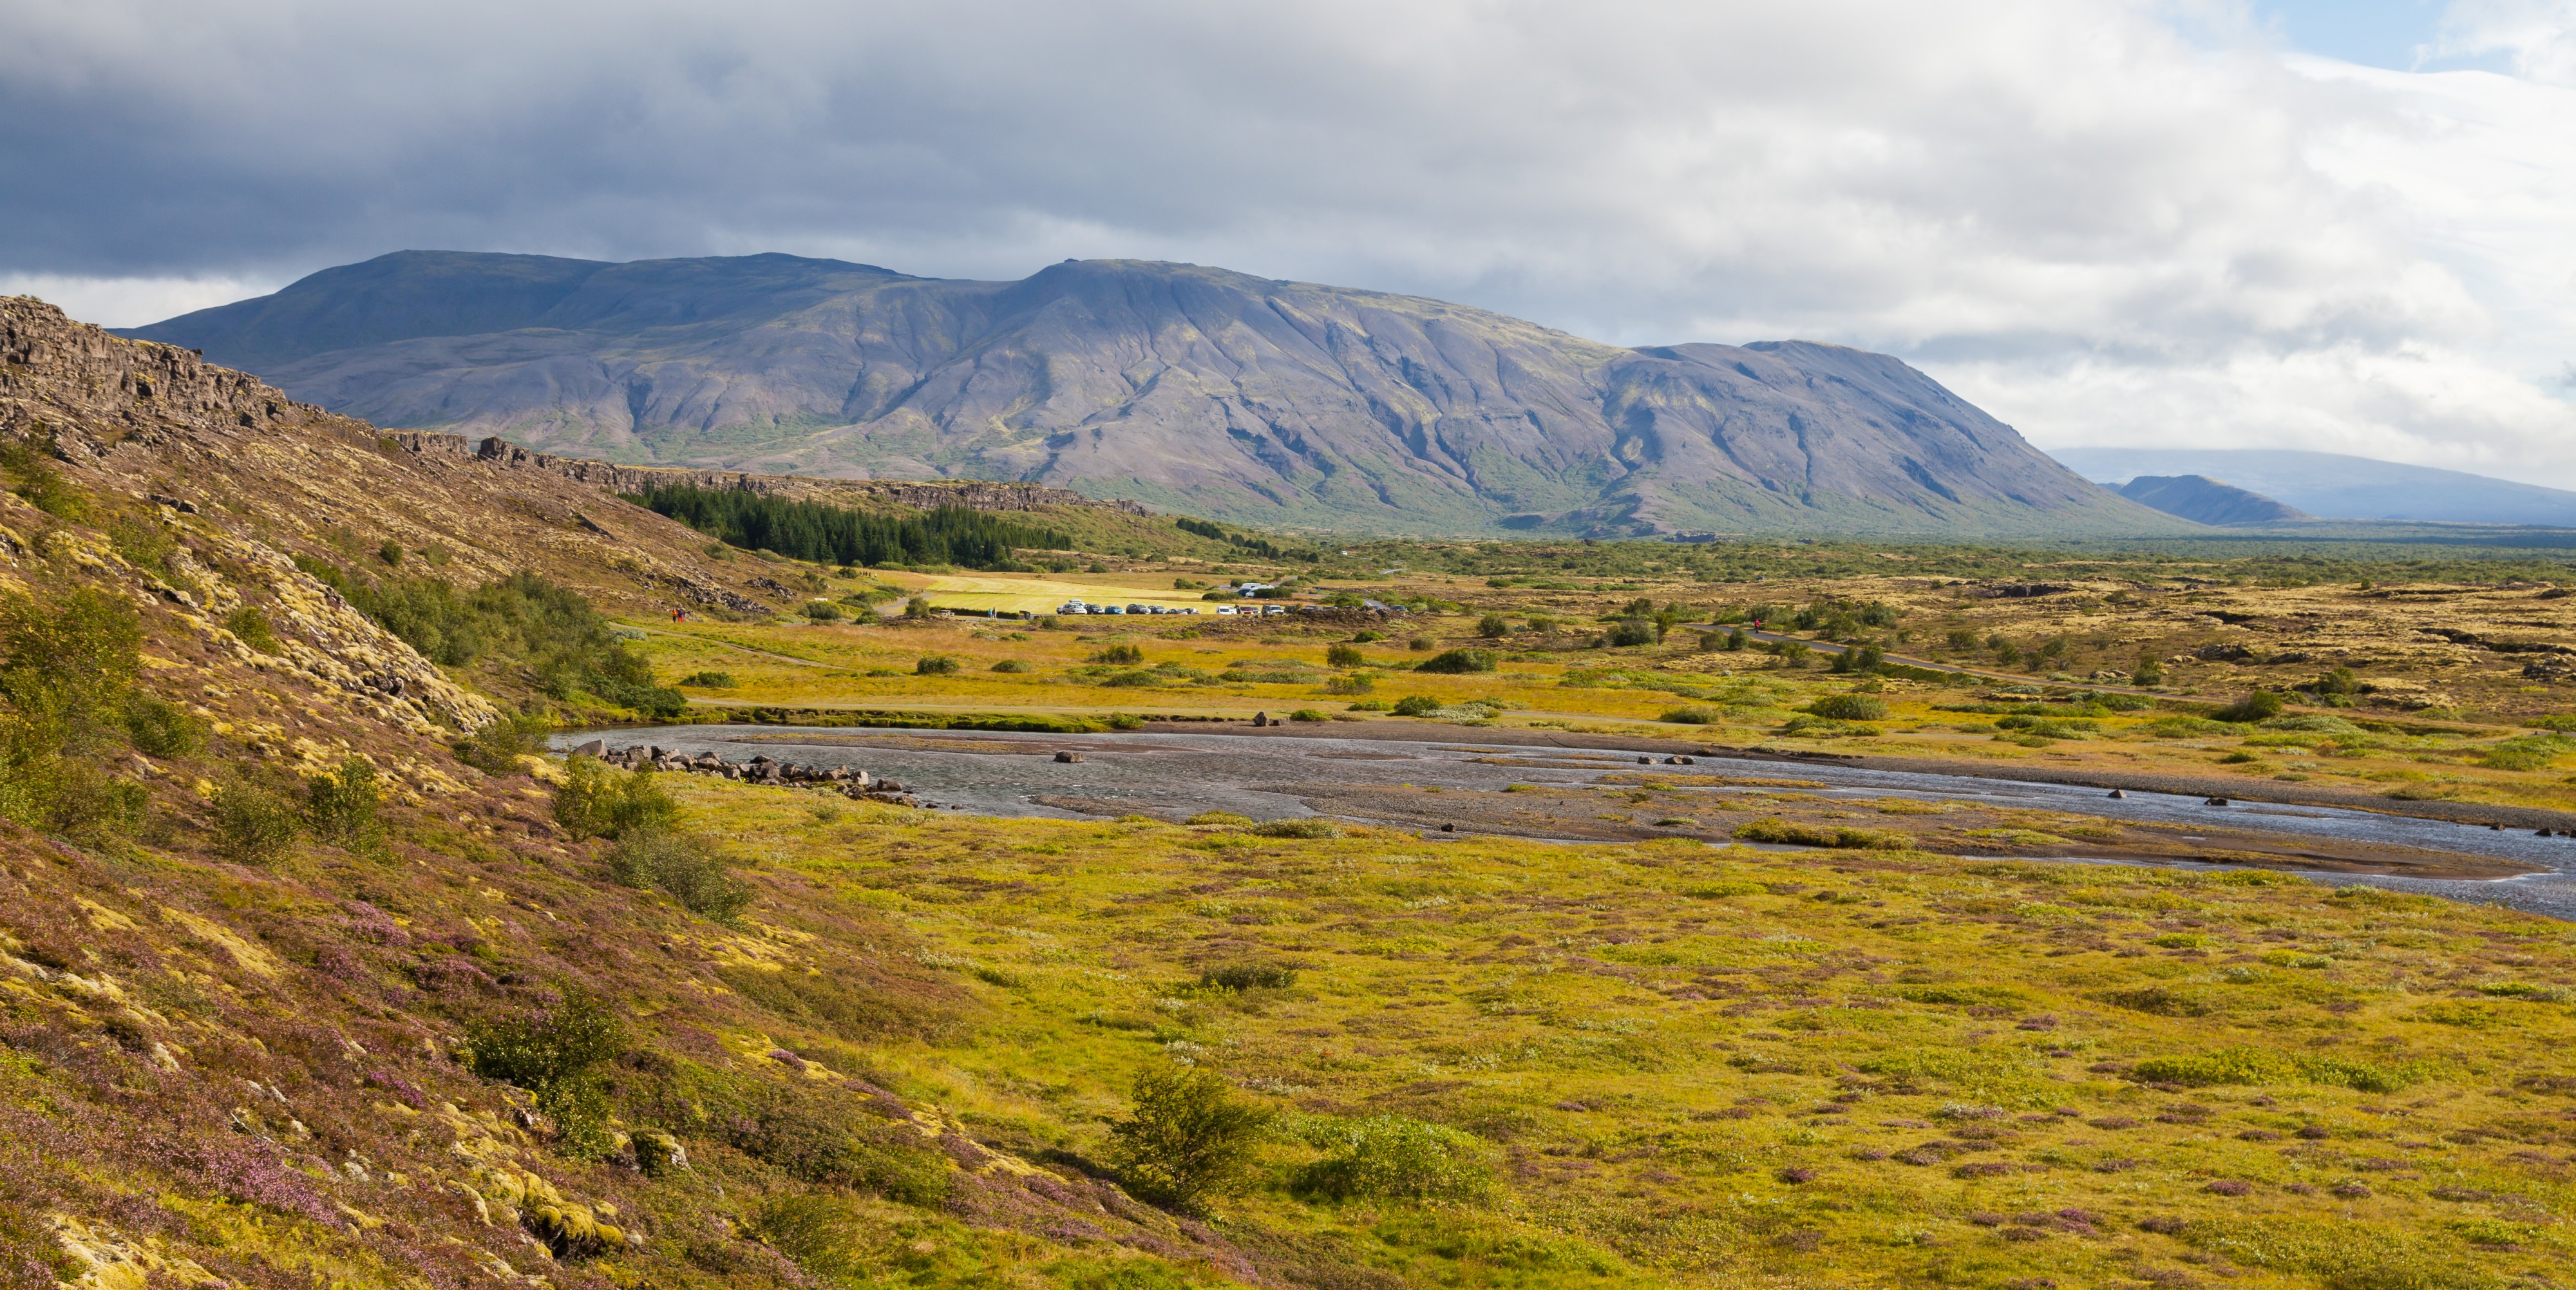 Arnarfell, Parque Nacional de Þingvellir, Suðurland, Islandia, 2014-08-16, DD 010